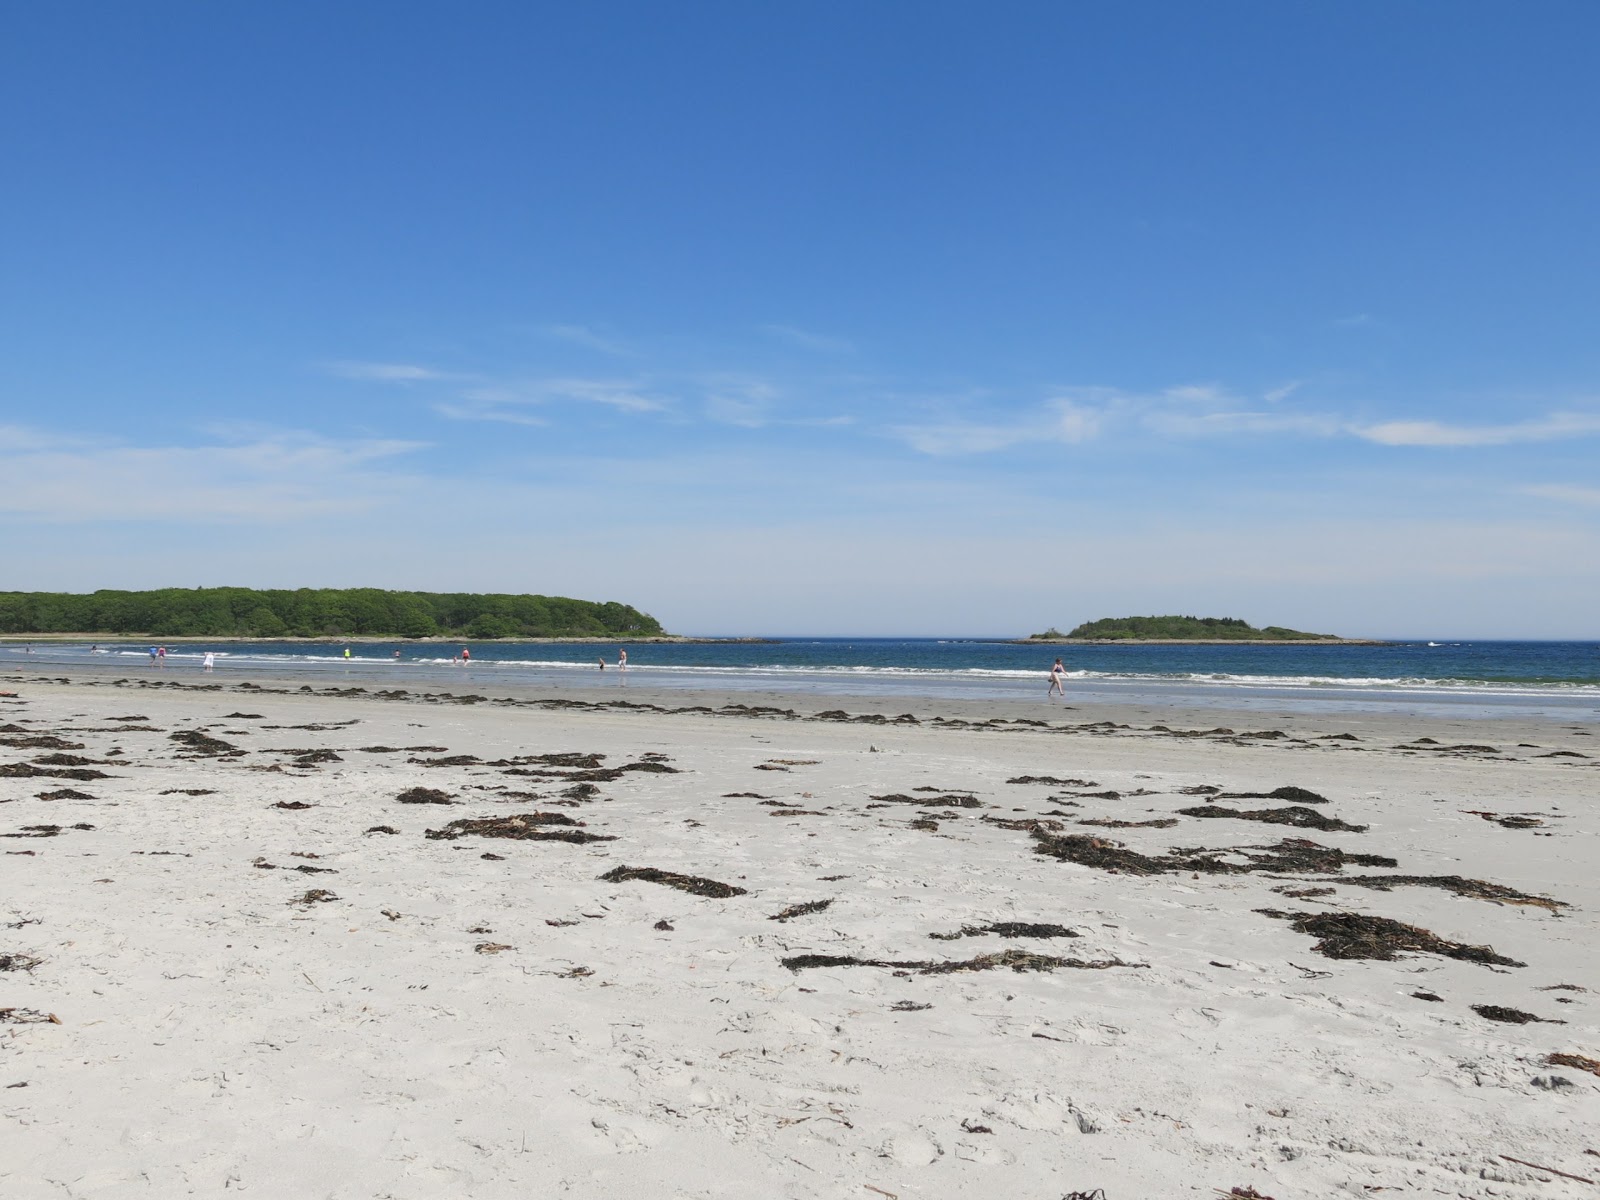 Fotografie cu Goose Rocks beach cu o suprafață de nisip alb